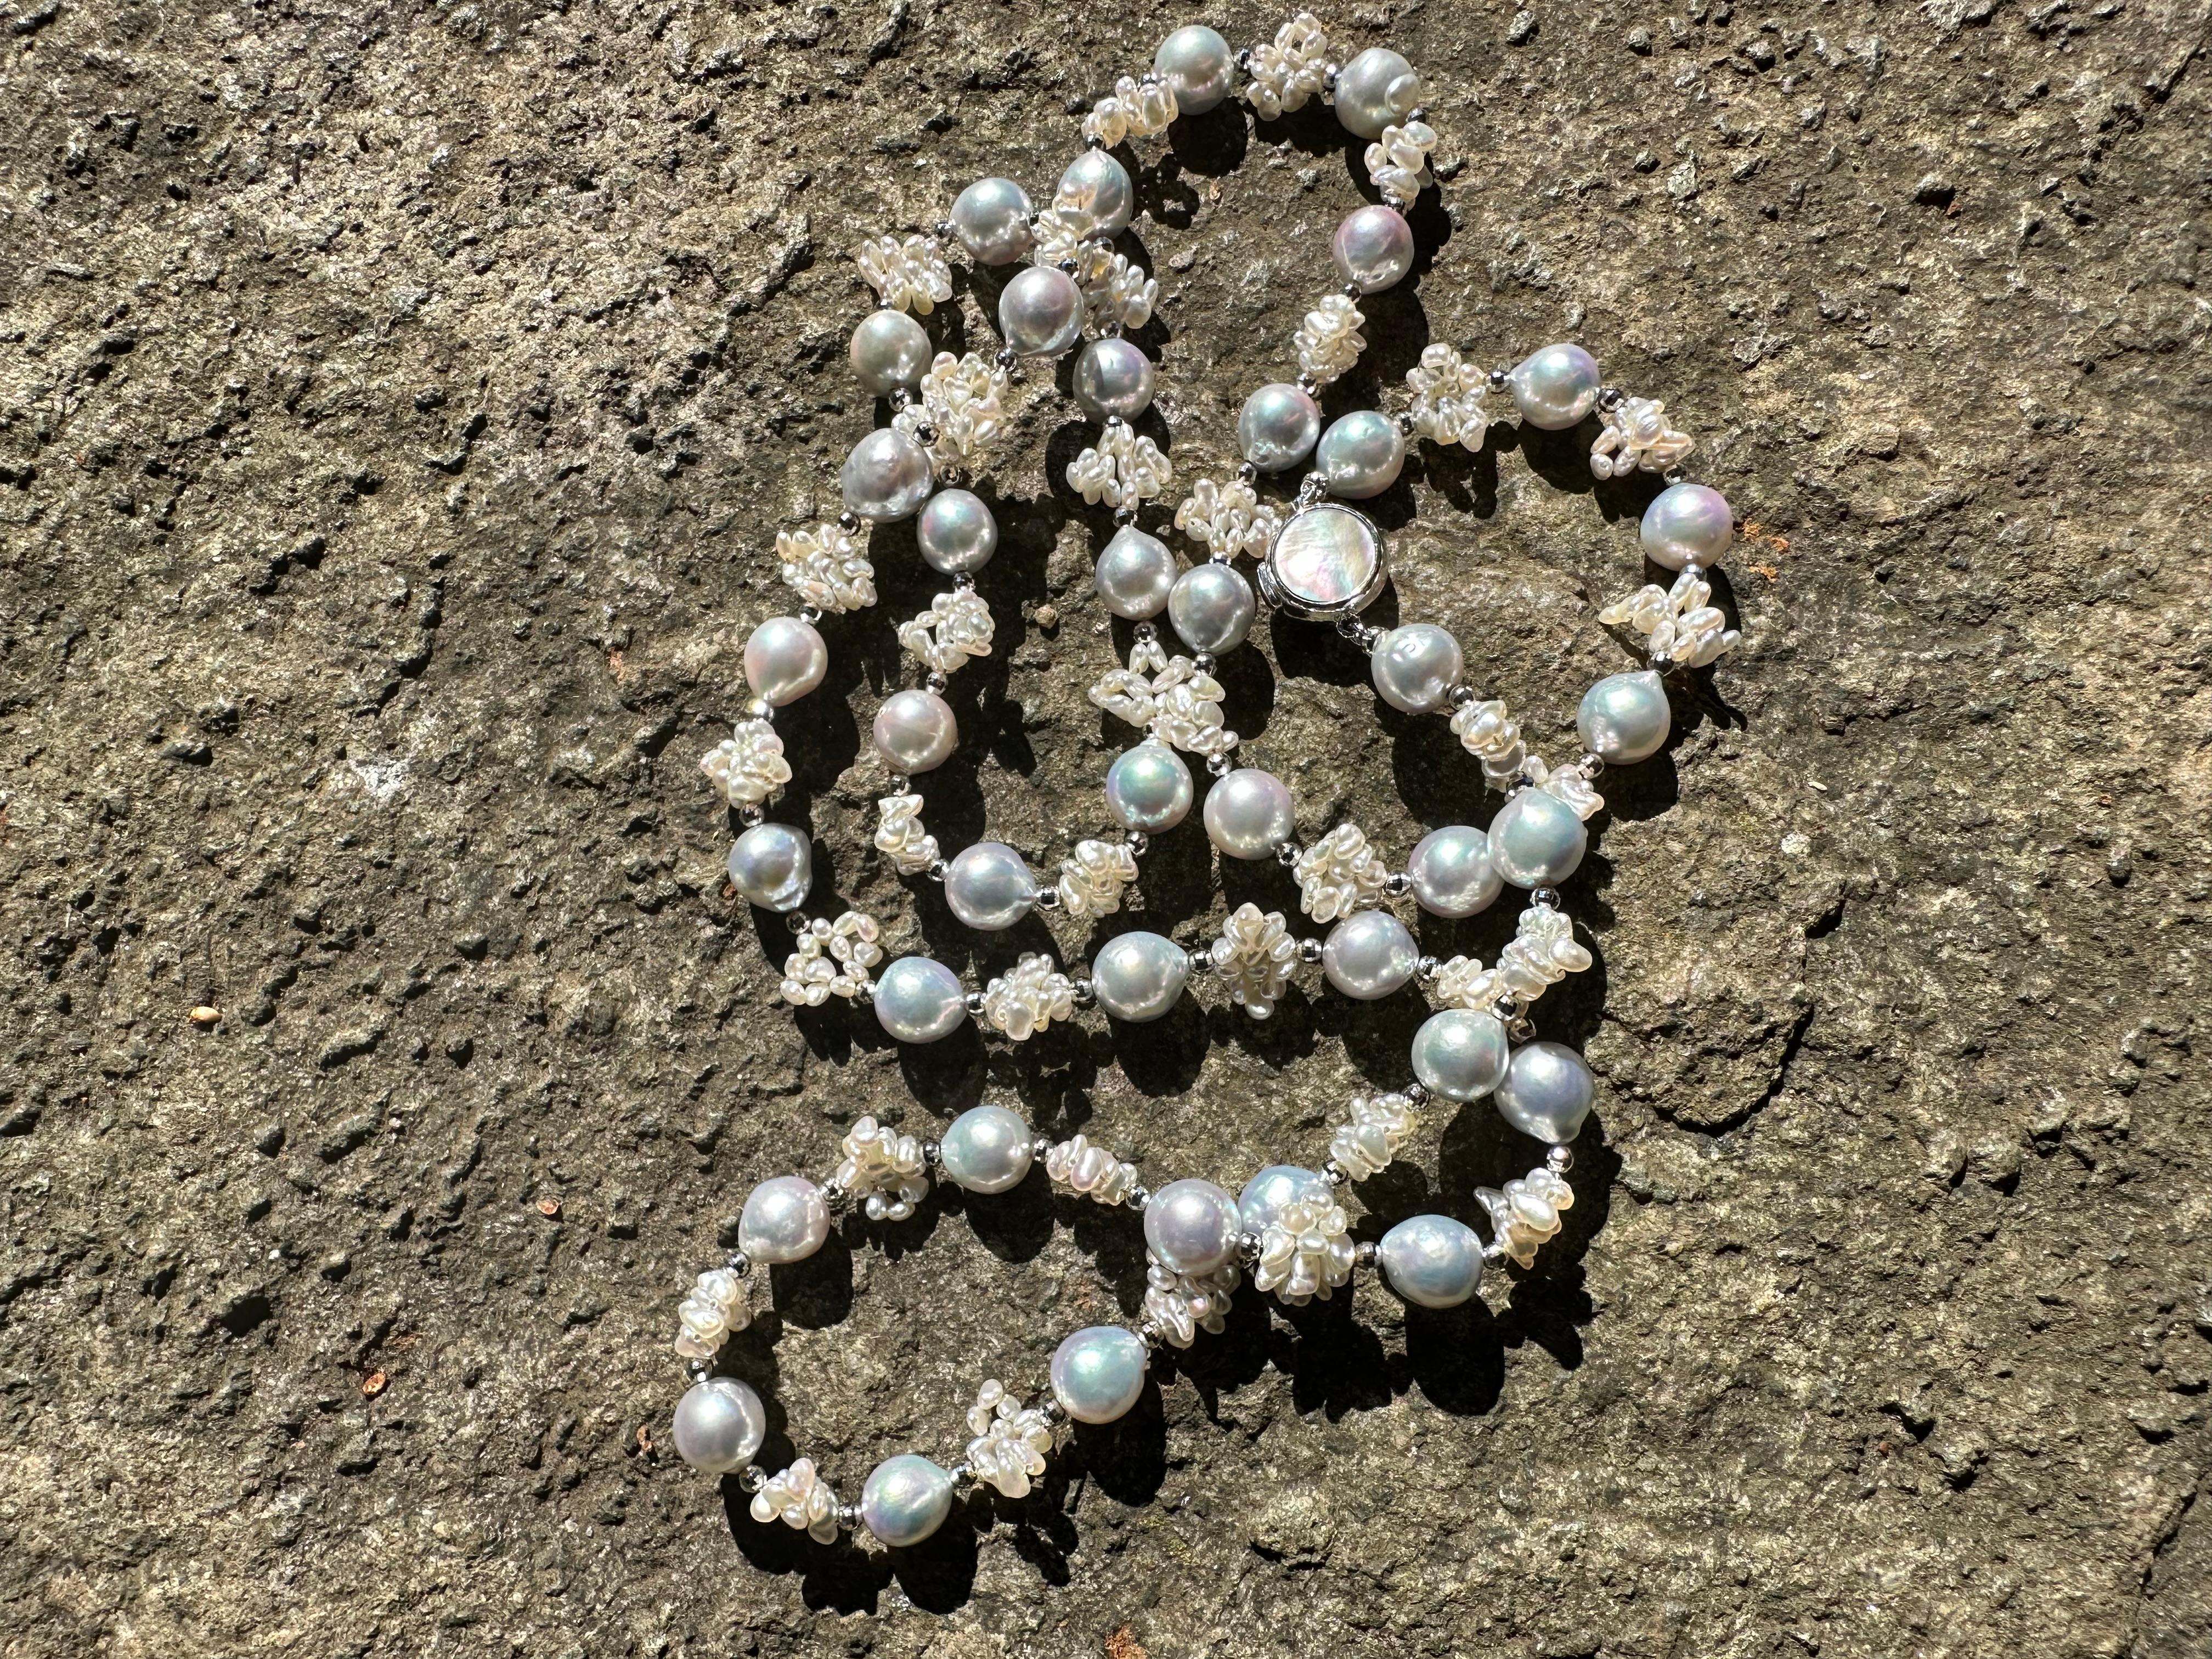 Créateur : IRIS PARURE
Ferme perlière : Ehime, Uwajima, JAPON
Caractéristiques : non coloré et non blanchi, BENI AKOYA®.
Taille de la perle : 8.00mm-8.50mm
Nombre de perles : 39

 Depuis sa création en 1953, IRIS PARURE fabrique des bijoux en perles